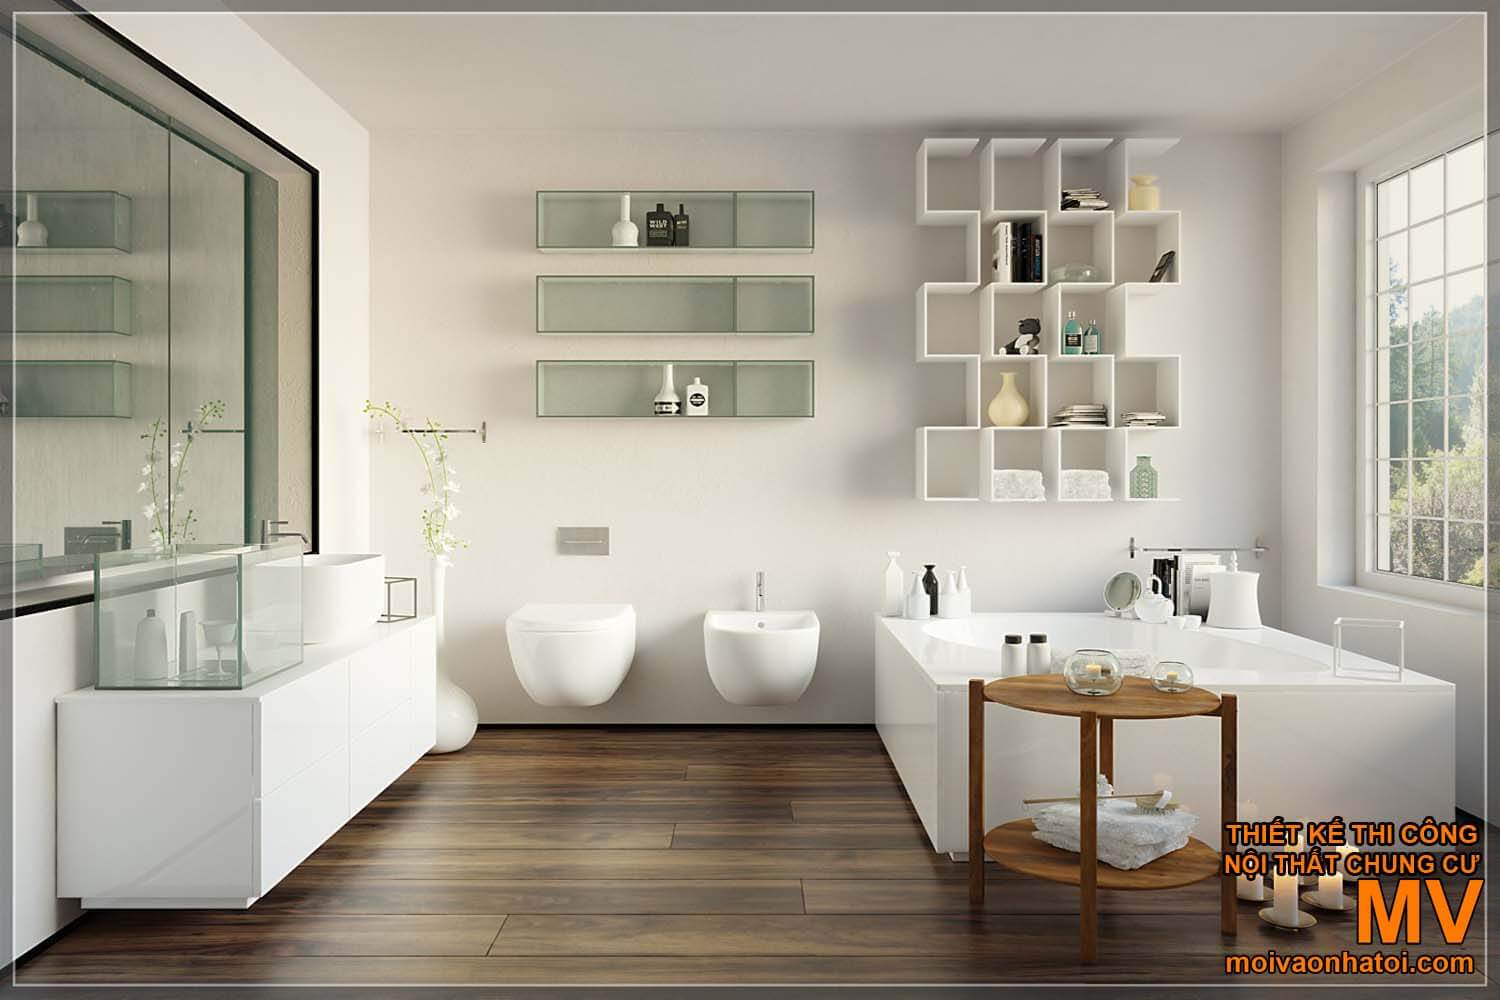 Lavabo lavabo, beau design de salle de bain moderne